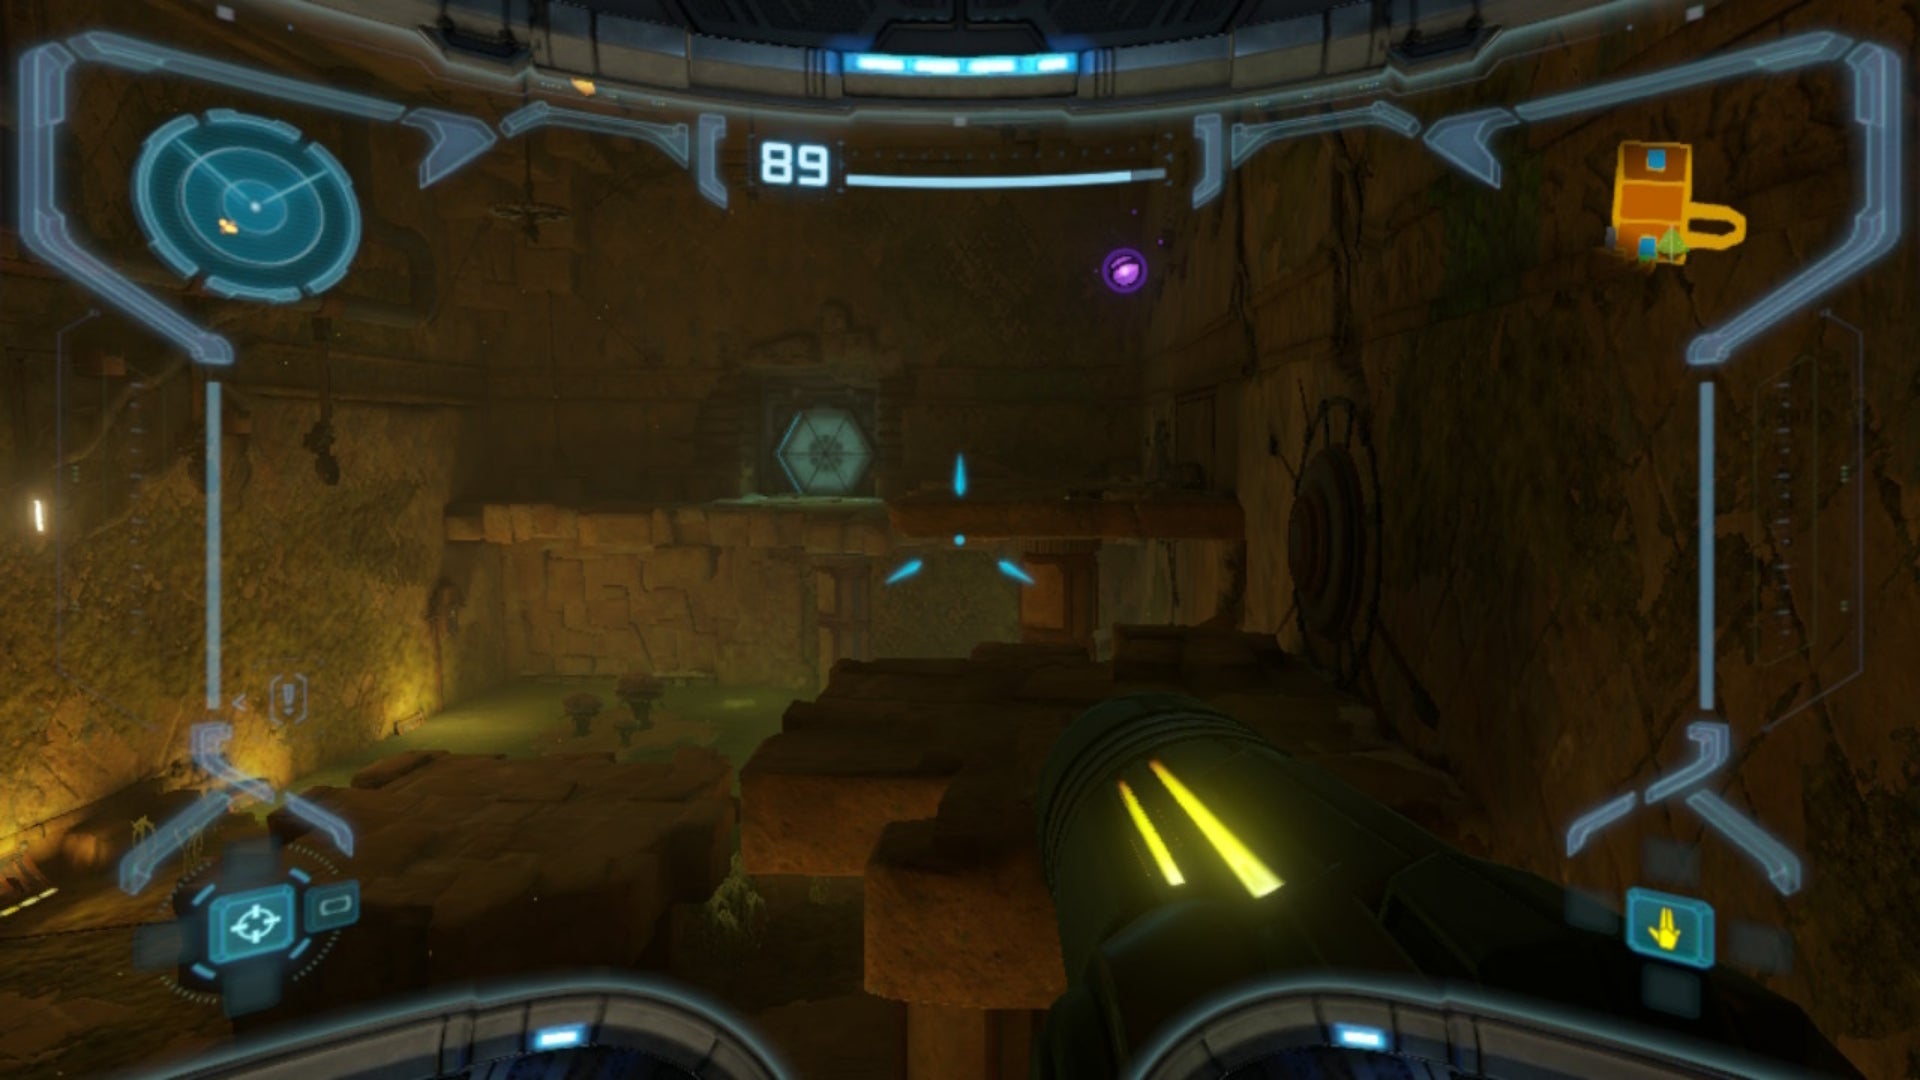 Samus aims at some platforms in Metroid Prime Remastered